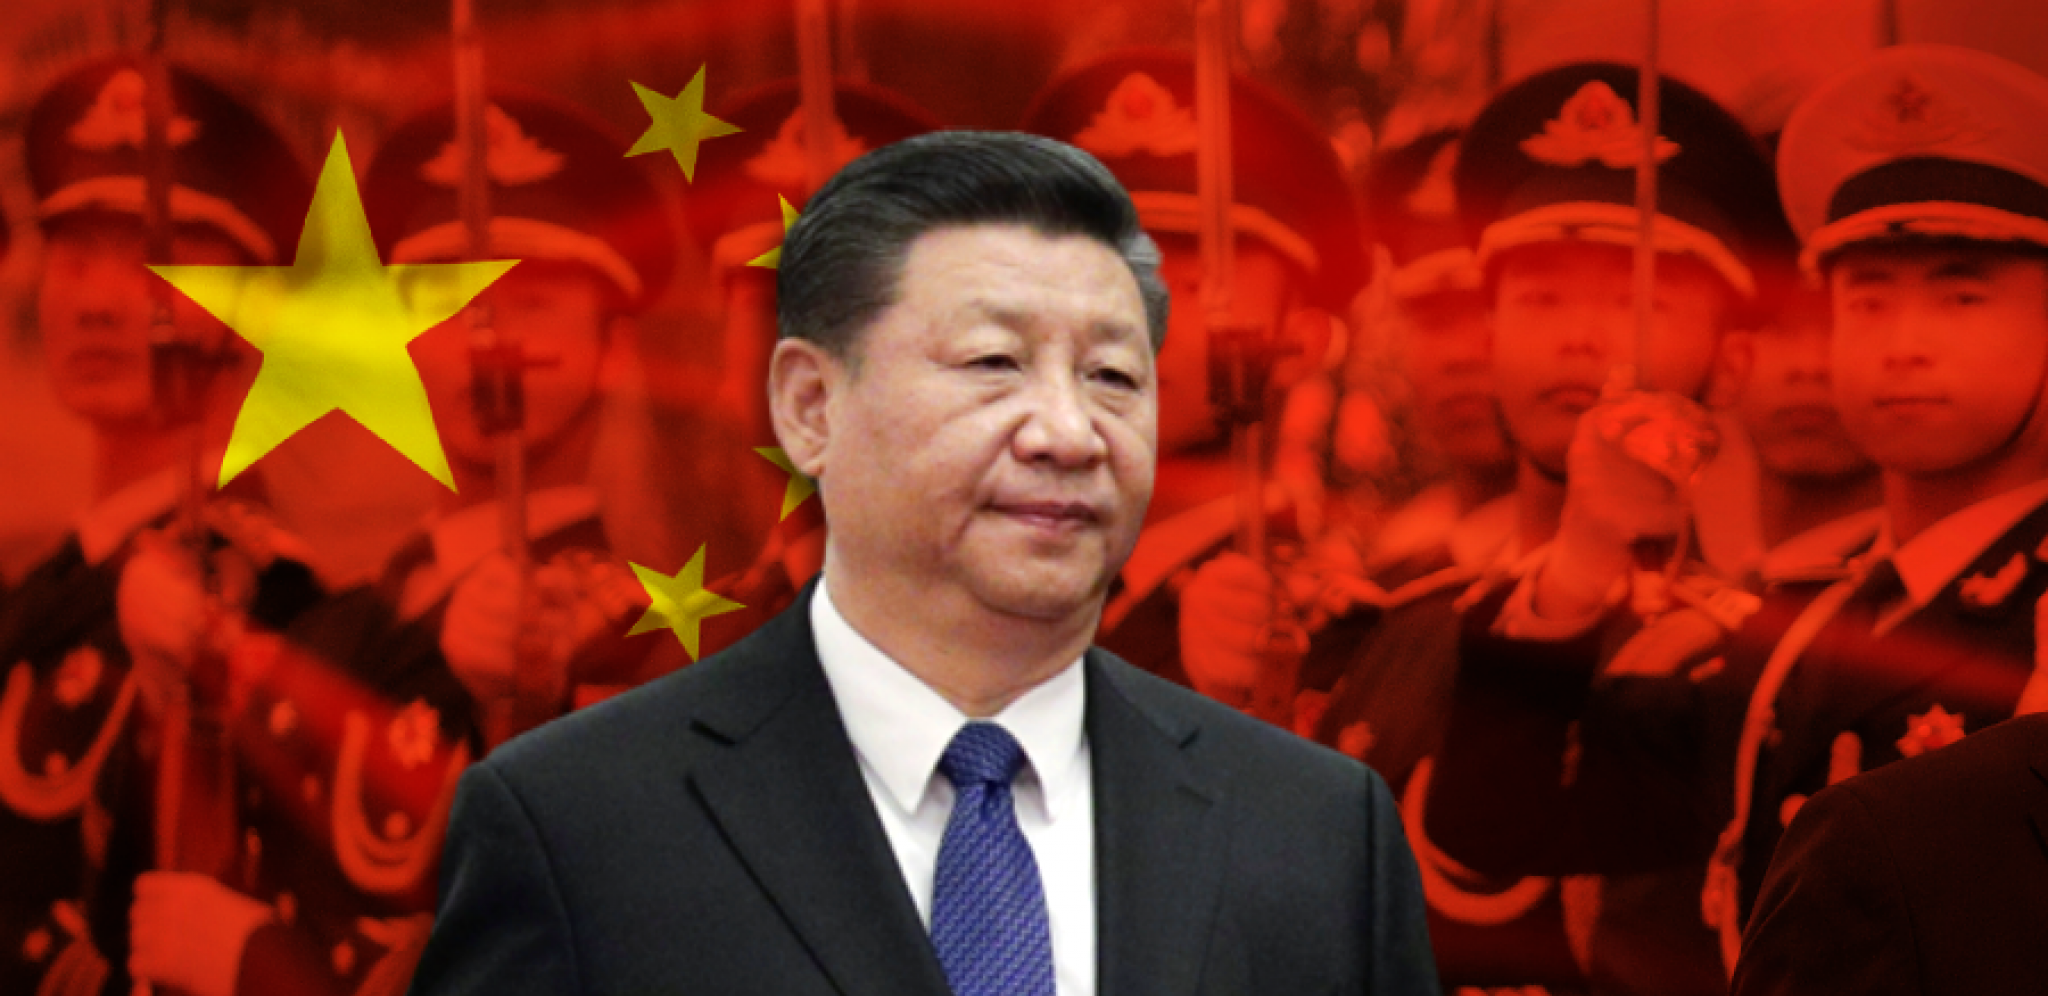 KINA ODBIJA KONTAKTE SA AMERIČKOM VOJSKOM Peking ne odustaje od svog stava